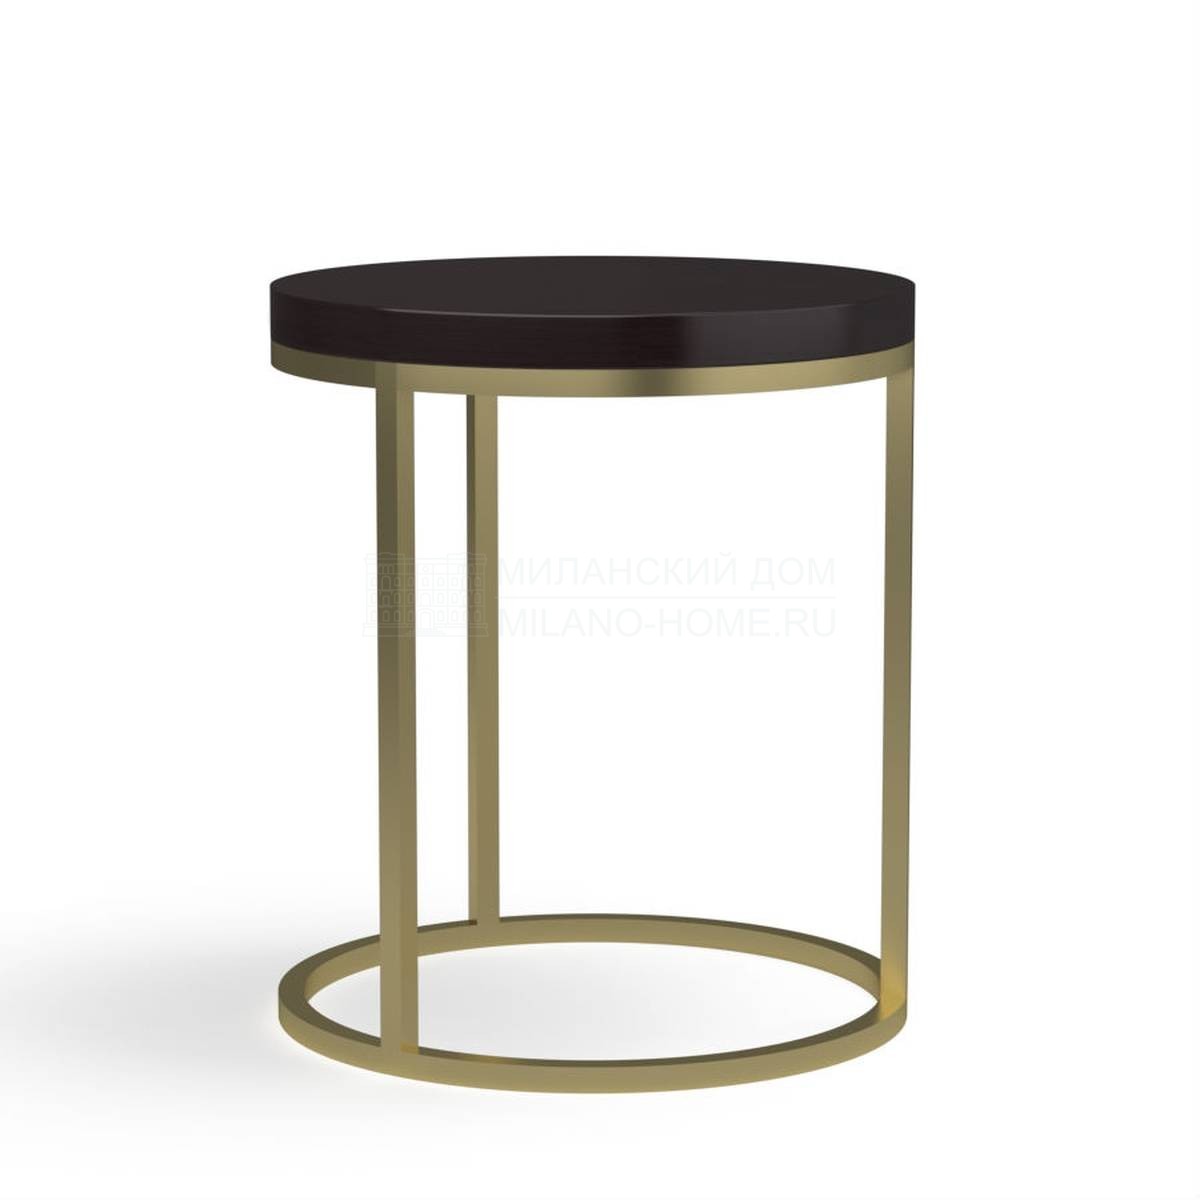 Кофейный столик V0500 coffee table из Италии фабрики LCI DECORA